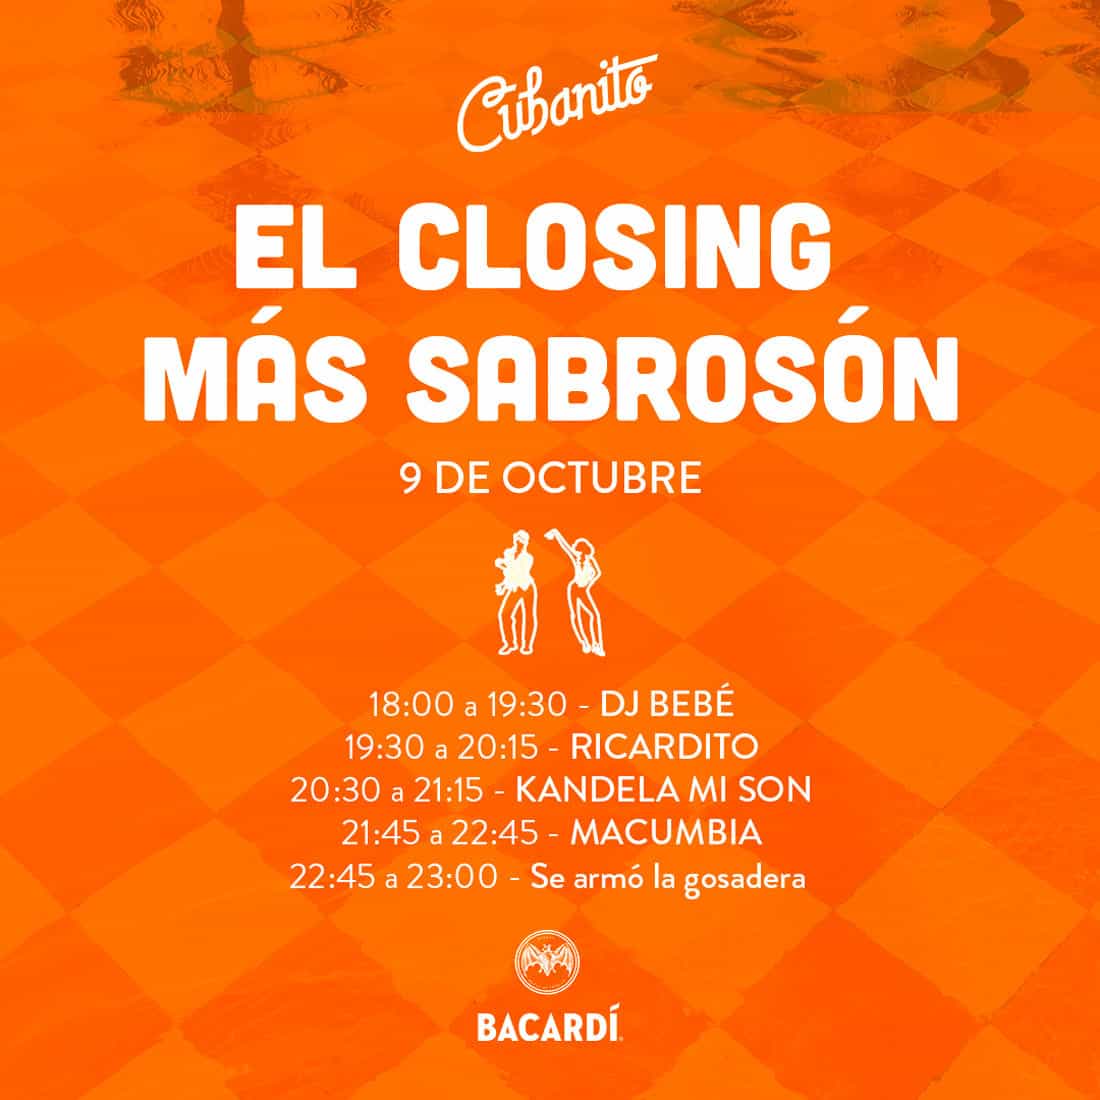 El Closing más sabrosón en Cubanito Ibiza Fiestas Ibiza